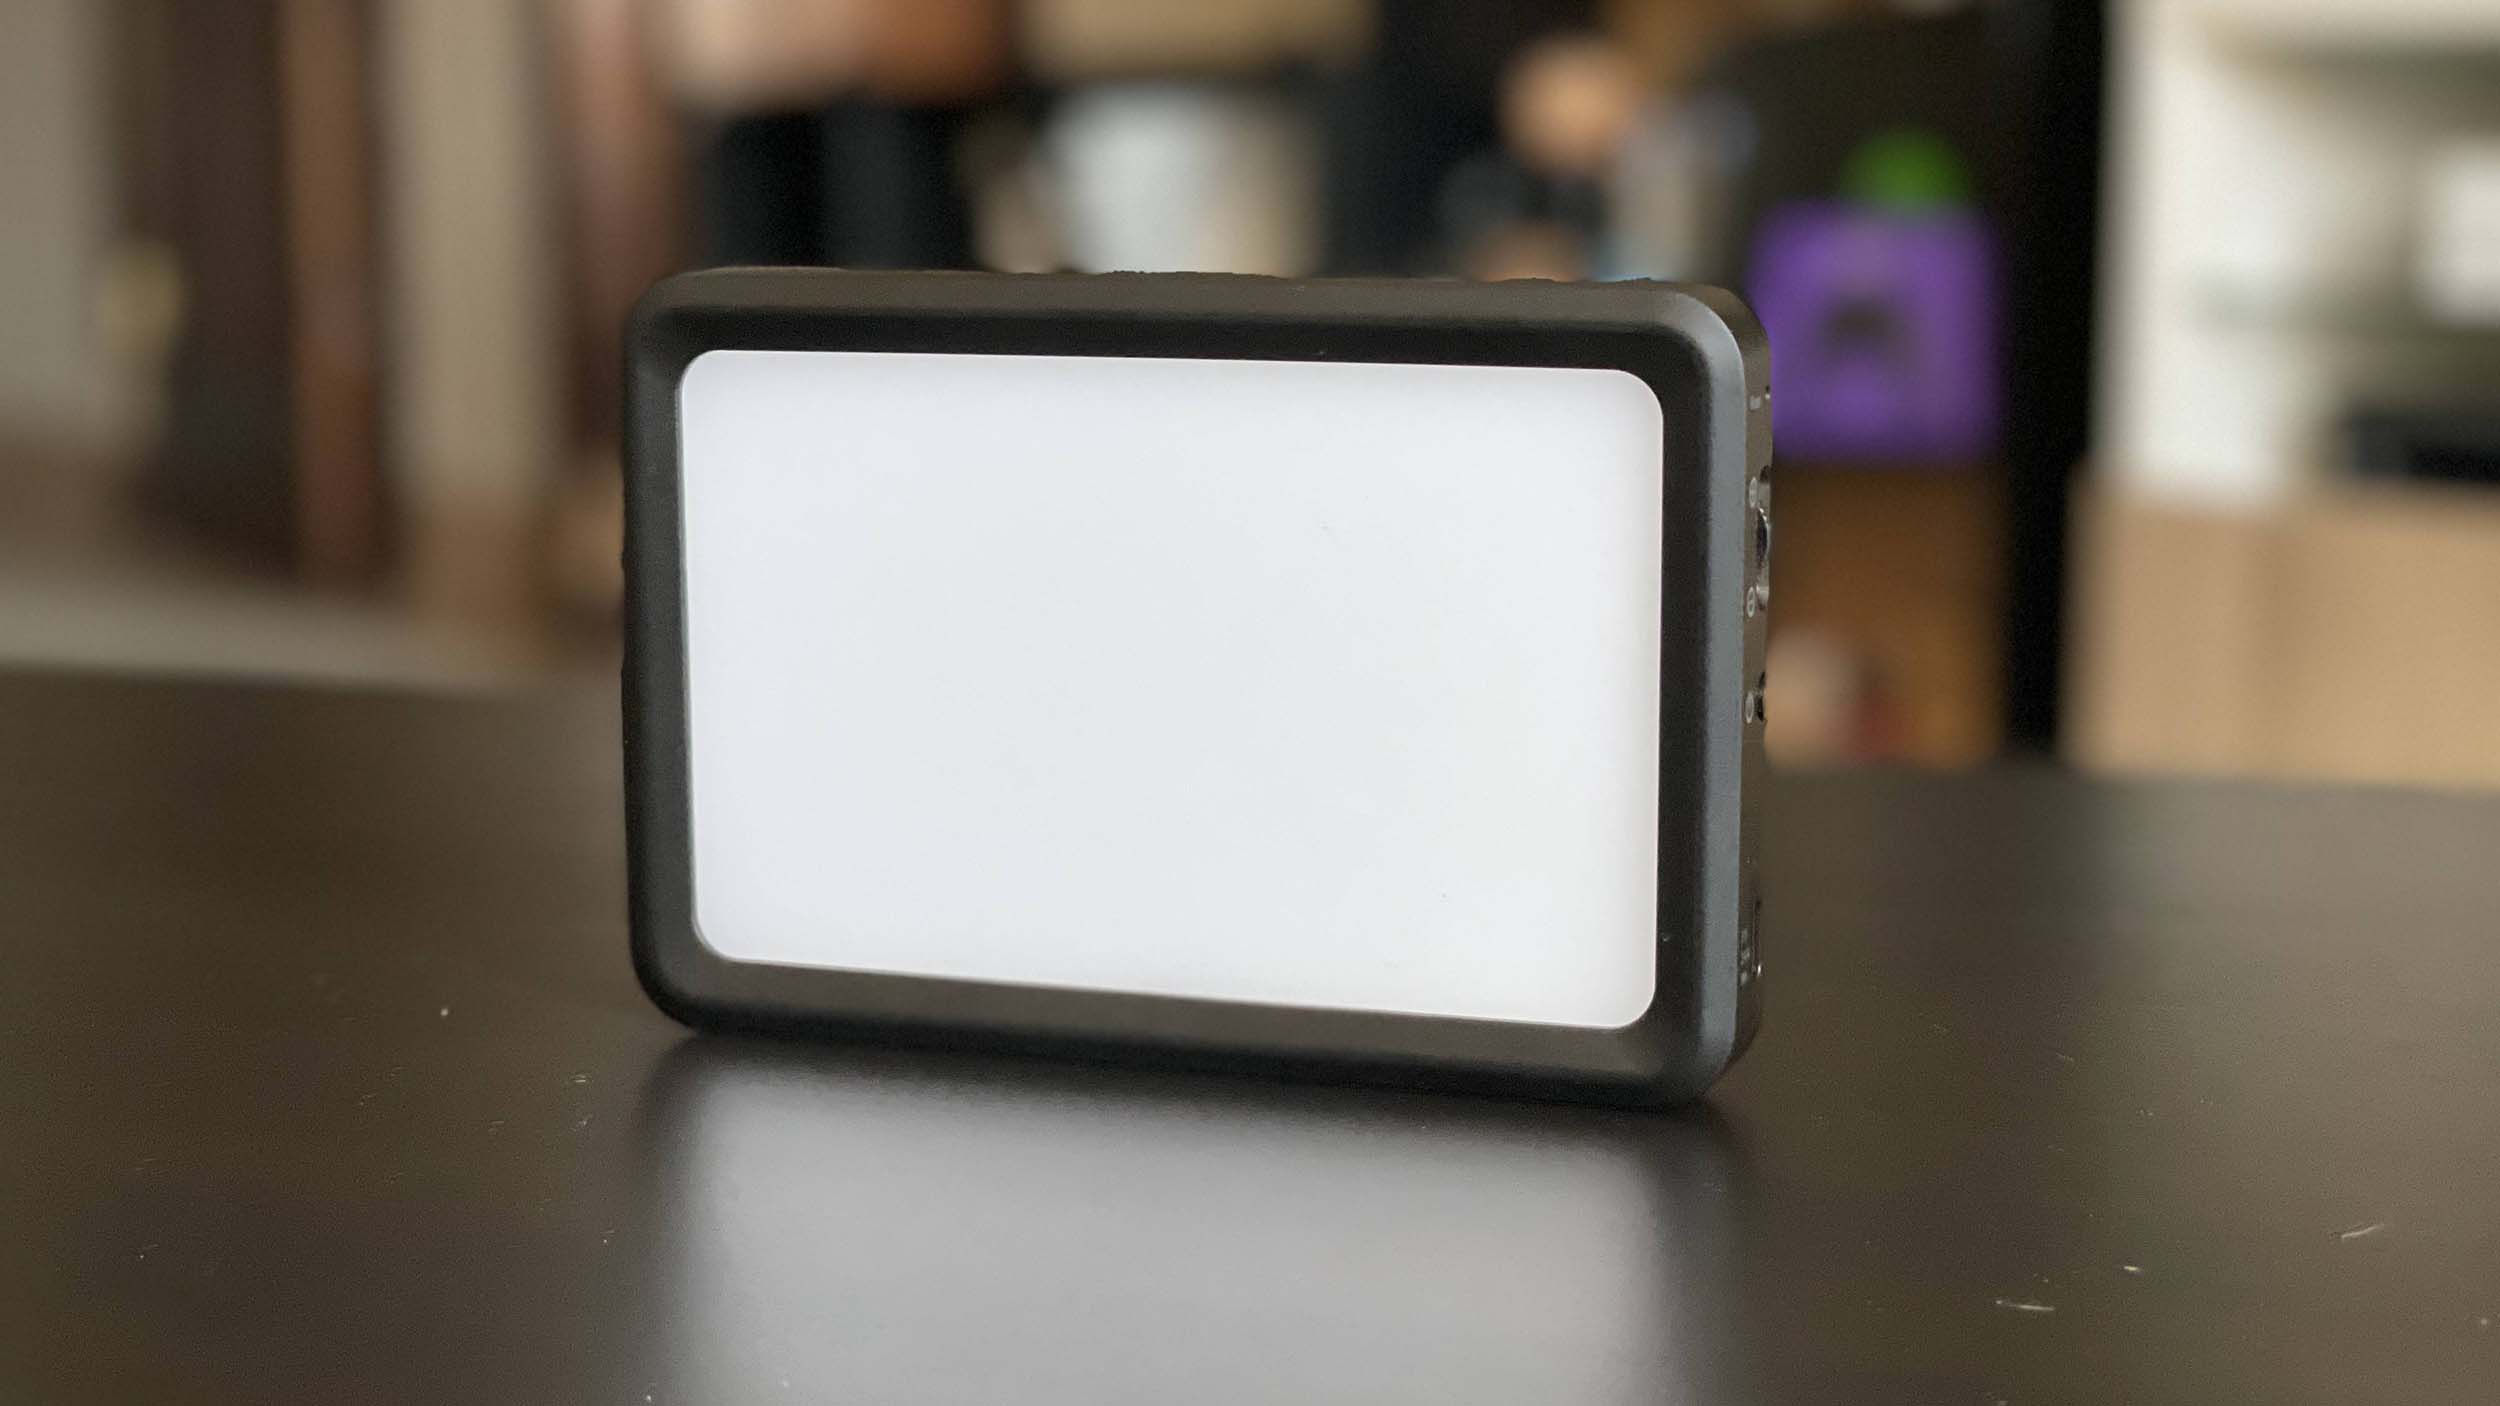 Elgato Key Light Air LED Panel Light